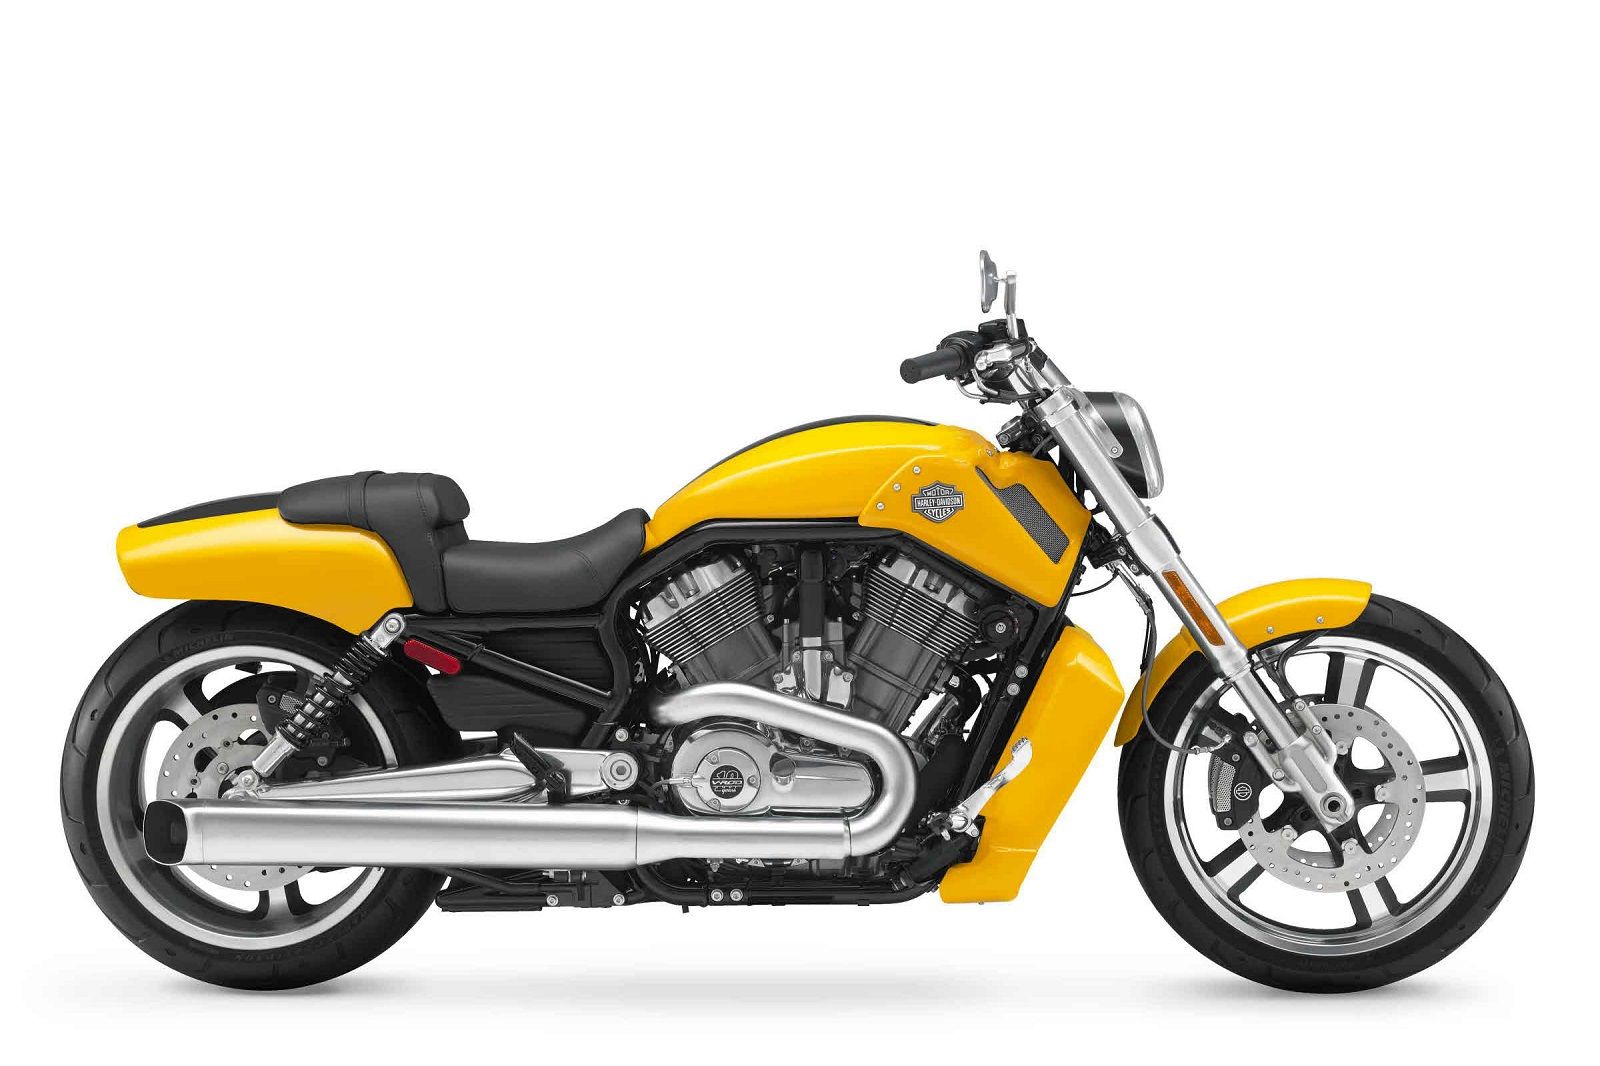 2012 Harley-Davidson VRSCF V-Rod Muscle